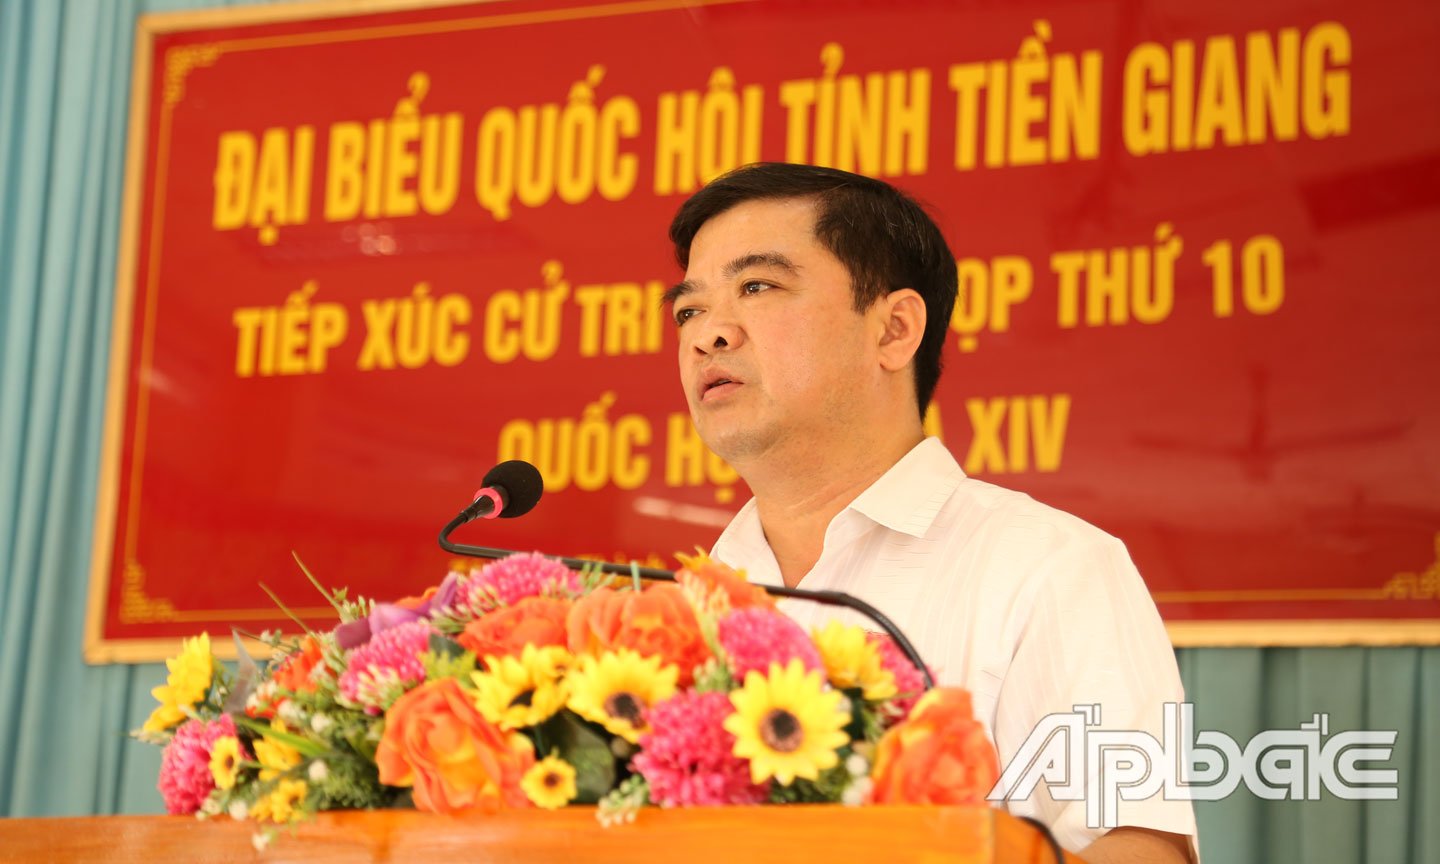 Đại biểu Nguyễn Thanh Hải, Đại biểu Quốc hội đơn vị tỉnh Tiền Giang đóng góp ý kiến tại phiên thảo luận trực tuyến